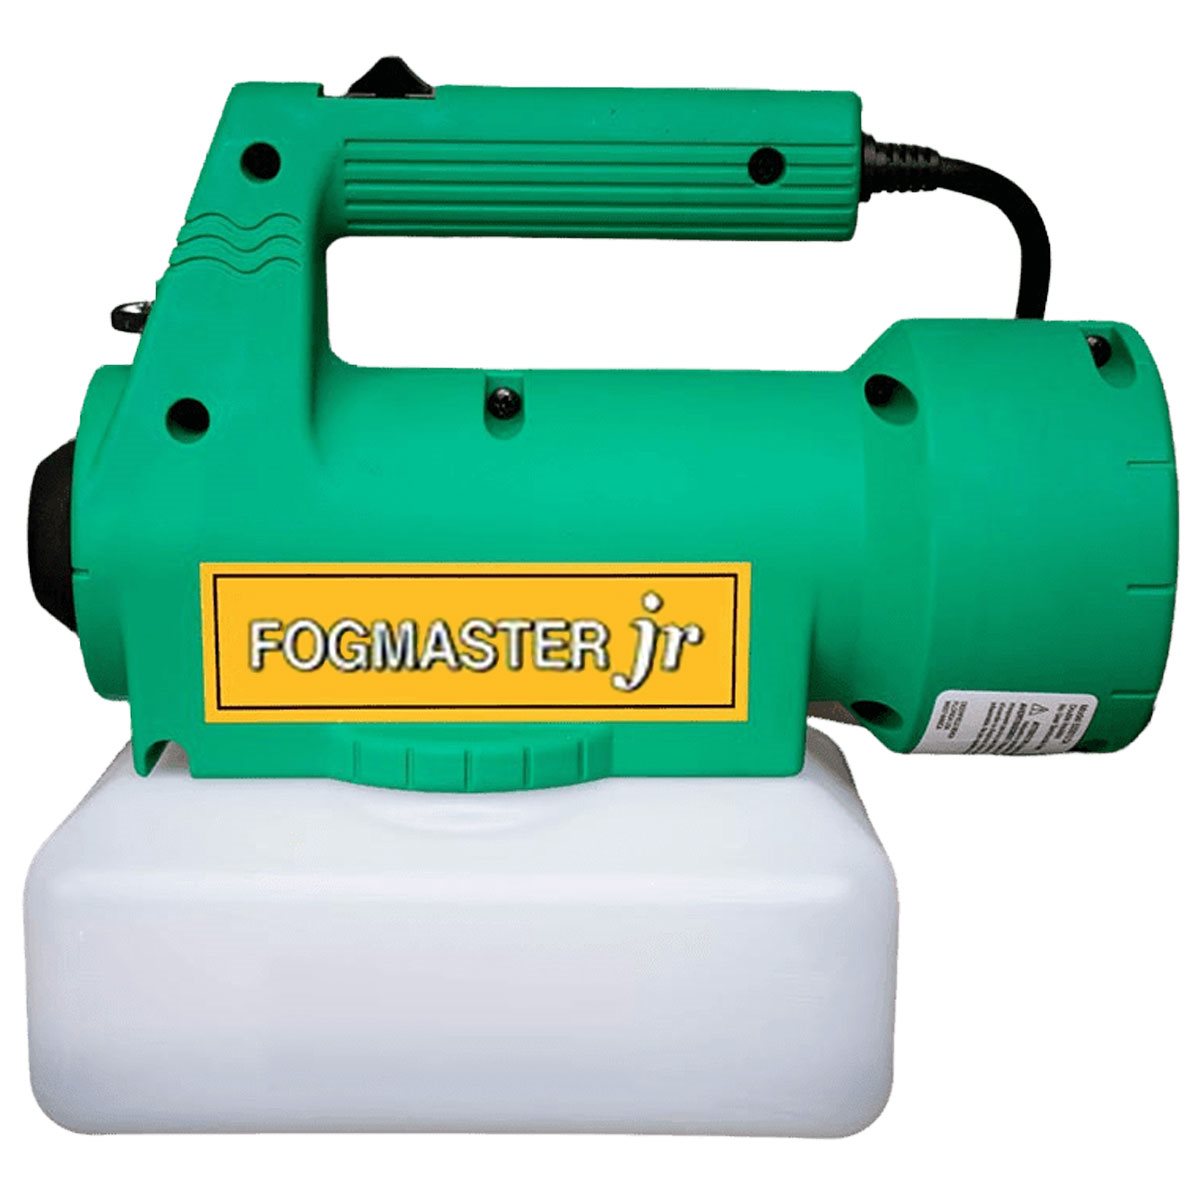 Fogmaster Jr 2 Quart 120 Volts